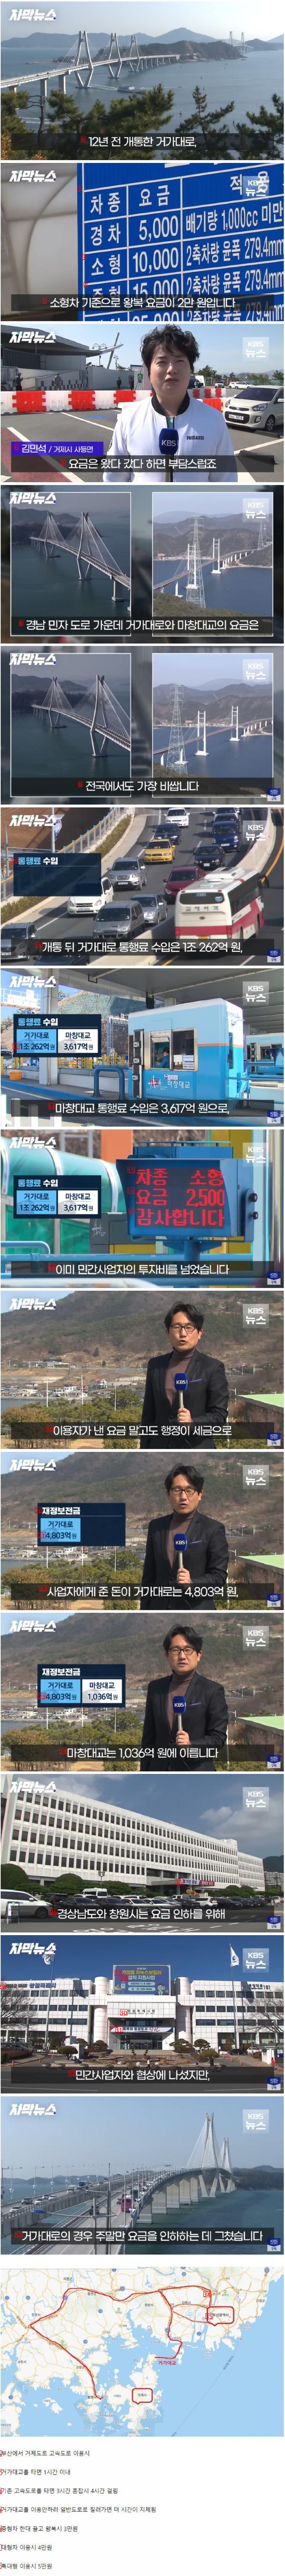 大韓民国で最も高い民間資本道路